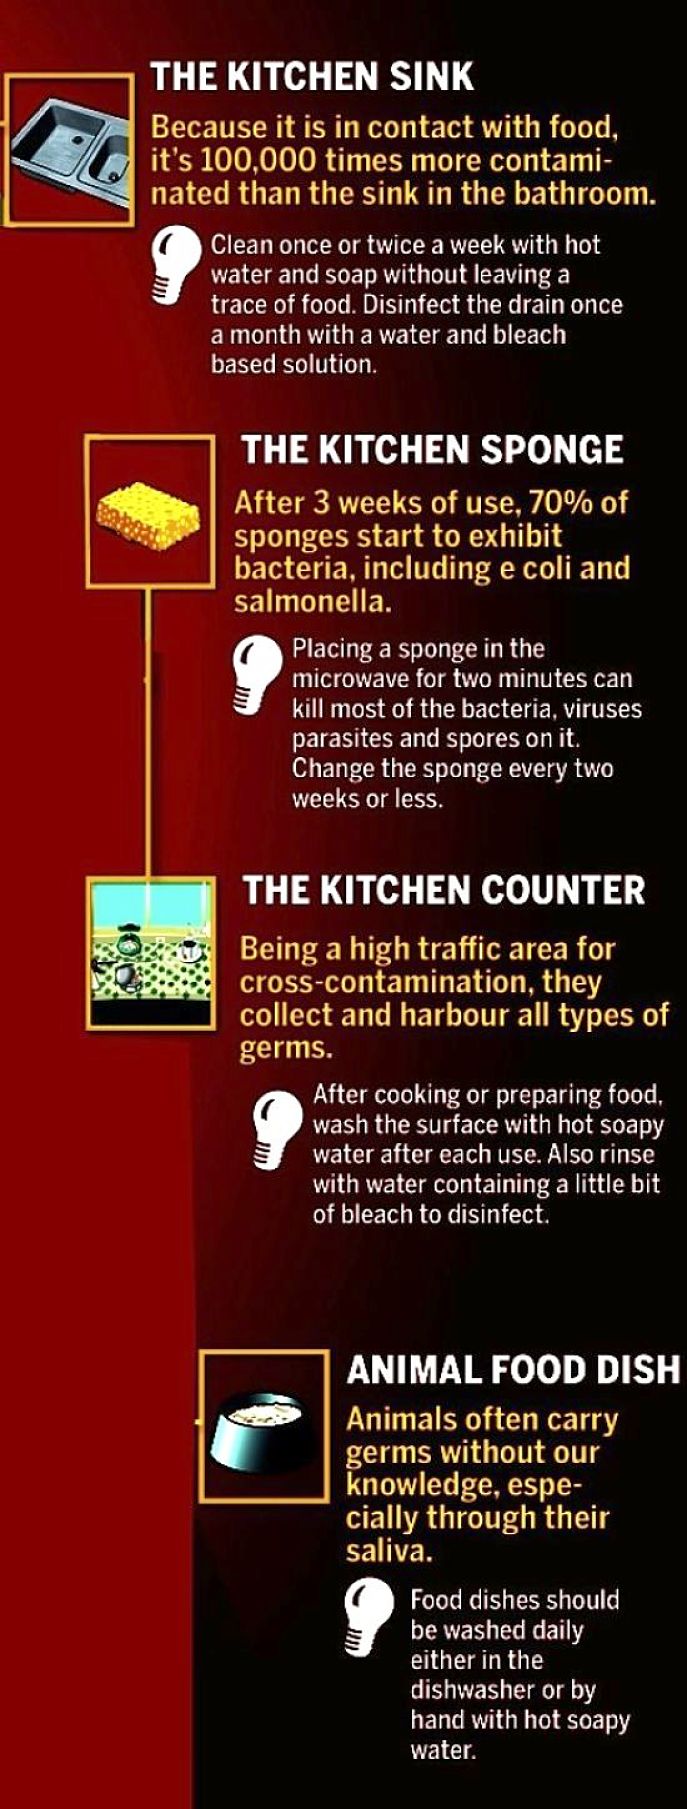 Worst contamination risks in the kitchen